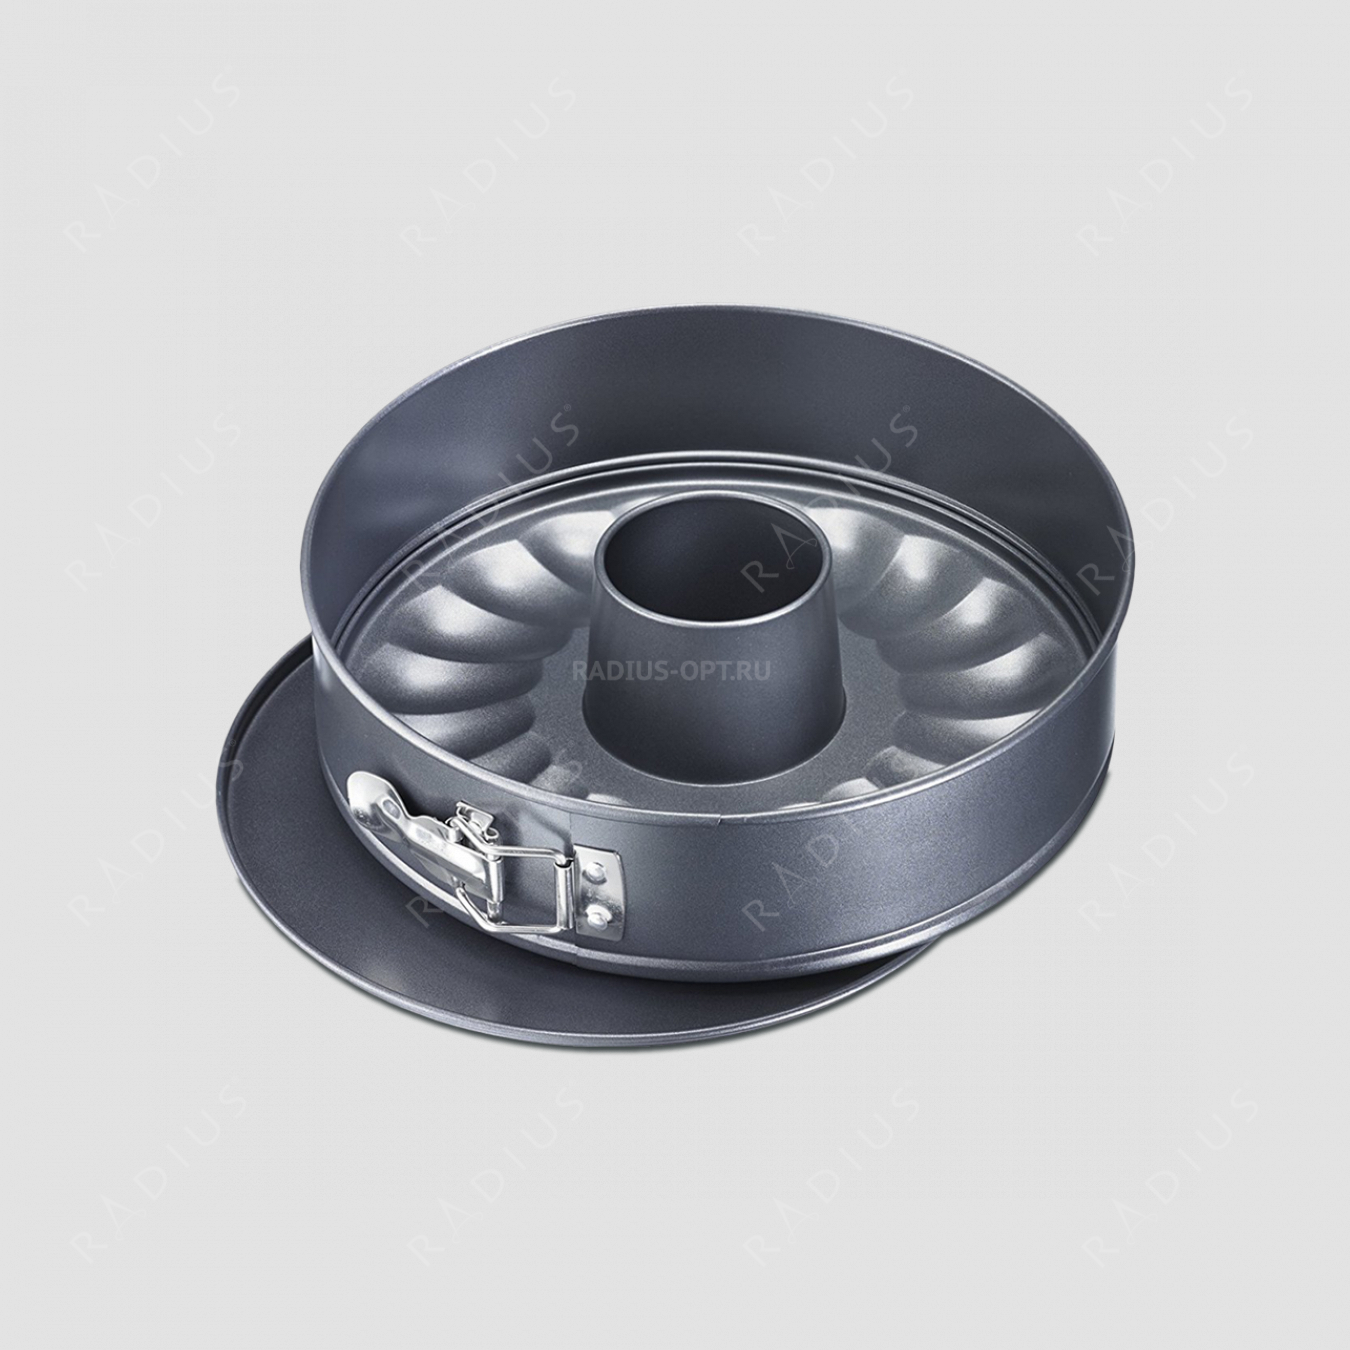 Форма для выпечки круглая, разъемная, диаметр 28 см, с 2-мя основаниями, сталь с антипригарным покрытием, серия Baking, Westmark, Германия